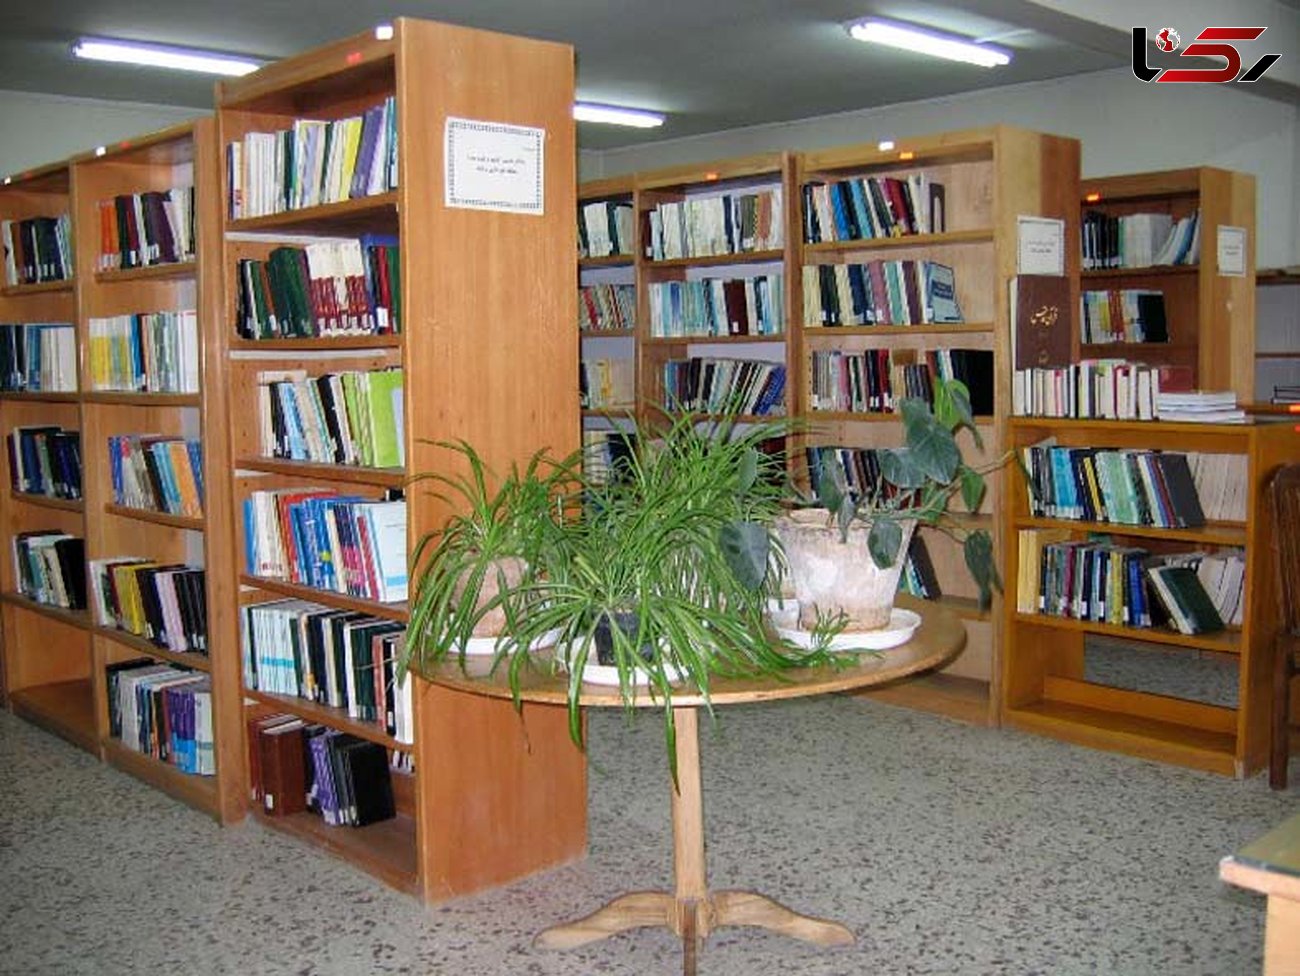 کلنگ زنی طرح توسعه کتابخانه عمومی امام حسن مجتبی(ع) شهر مهاجران 